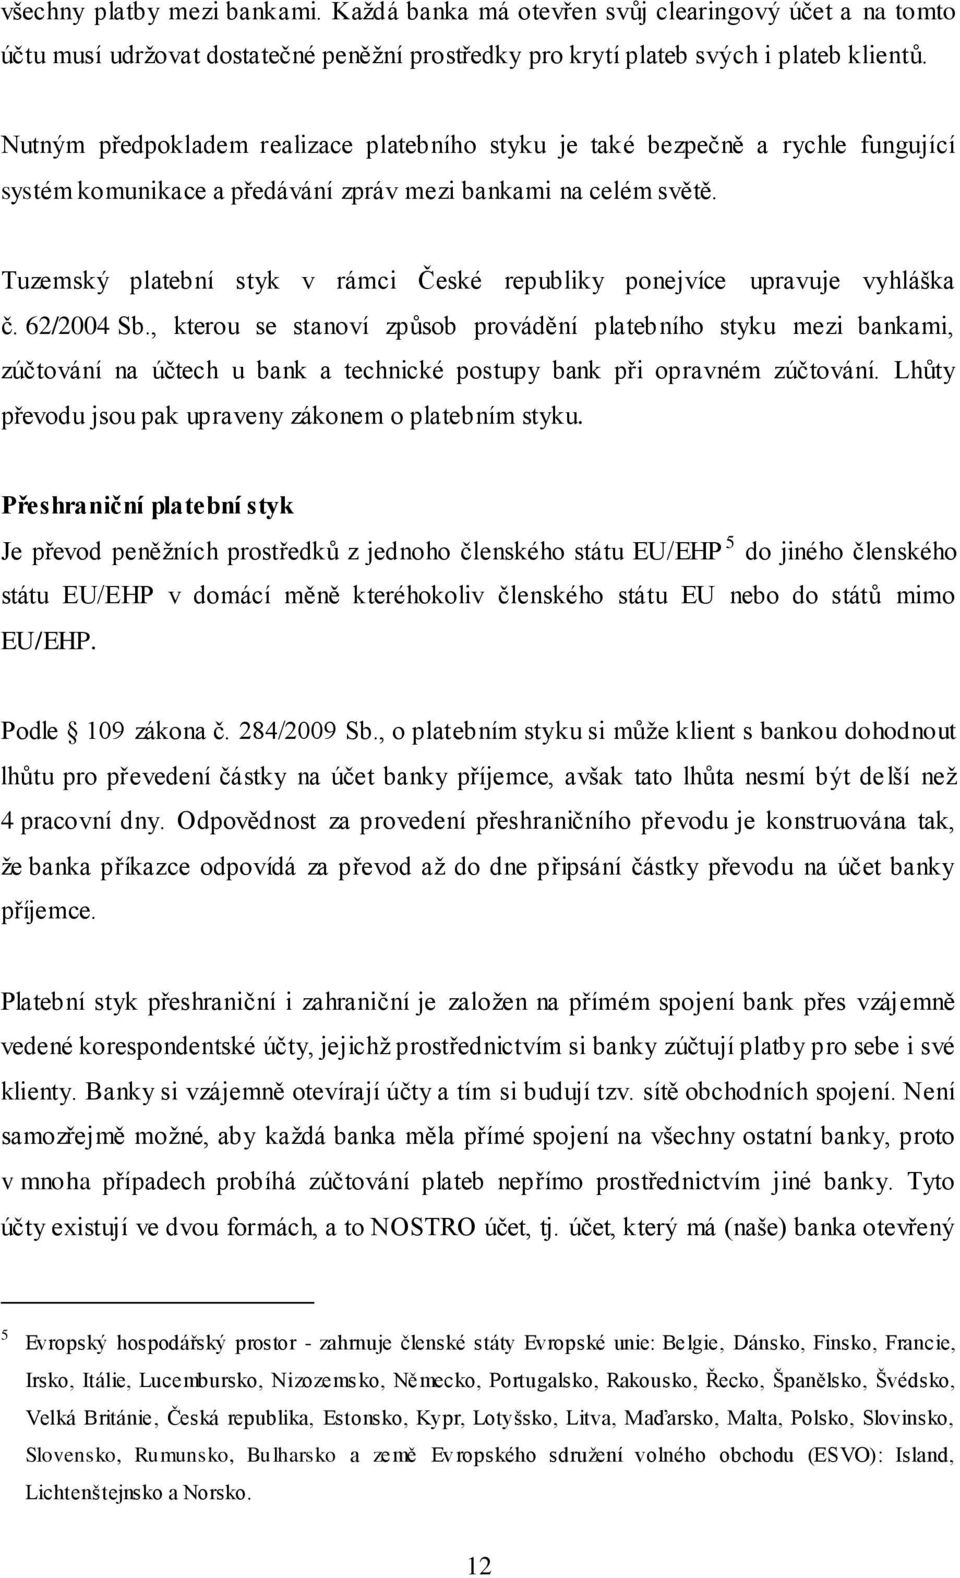 Tuzemský platební styk v rámci České republiky ponejvíce upravuje vyhláška č. 62/2004 Sb.